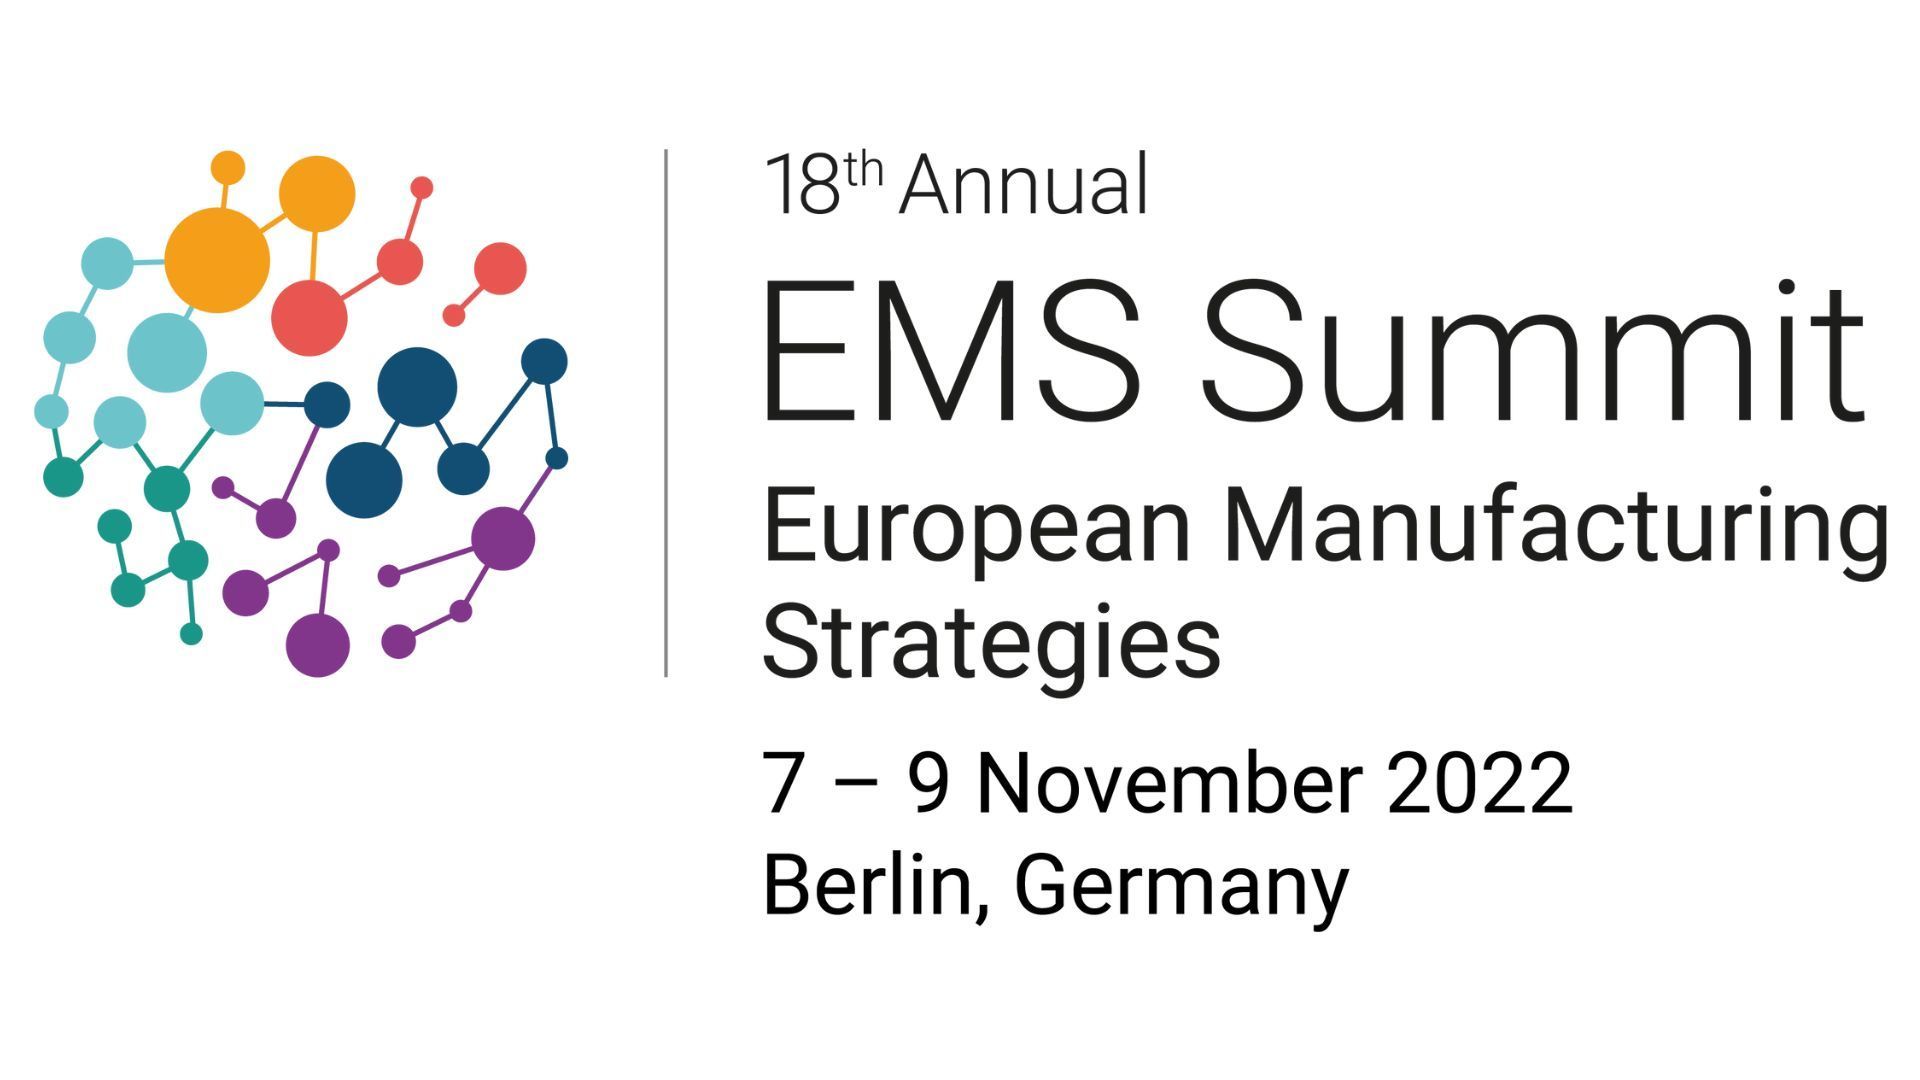 European Manufacturing Strategies Summit 2022, Berlin, Germany